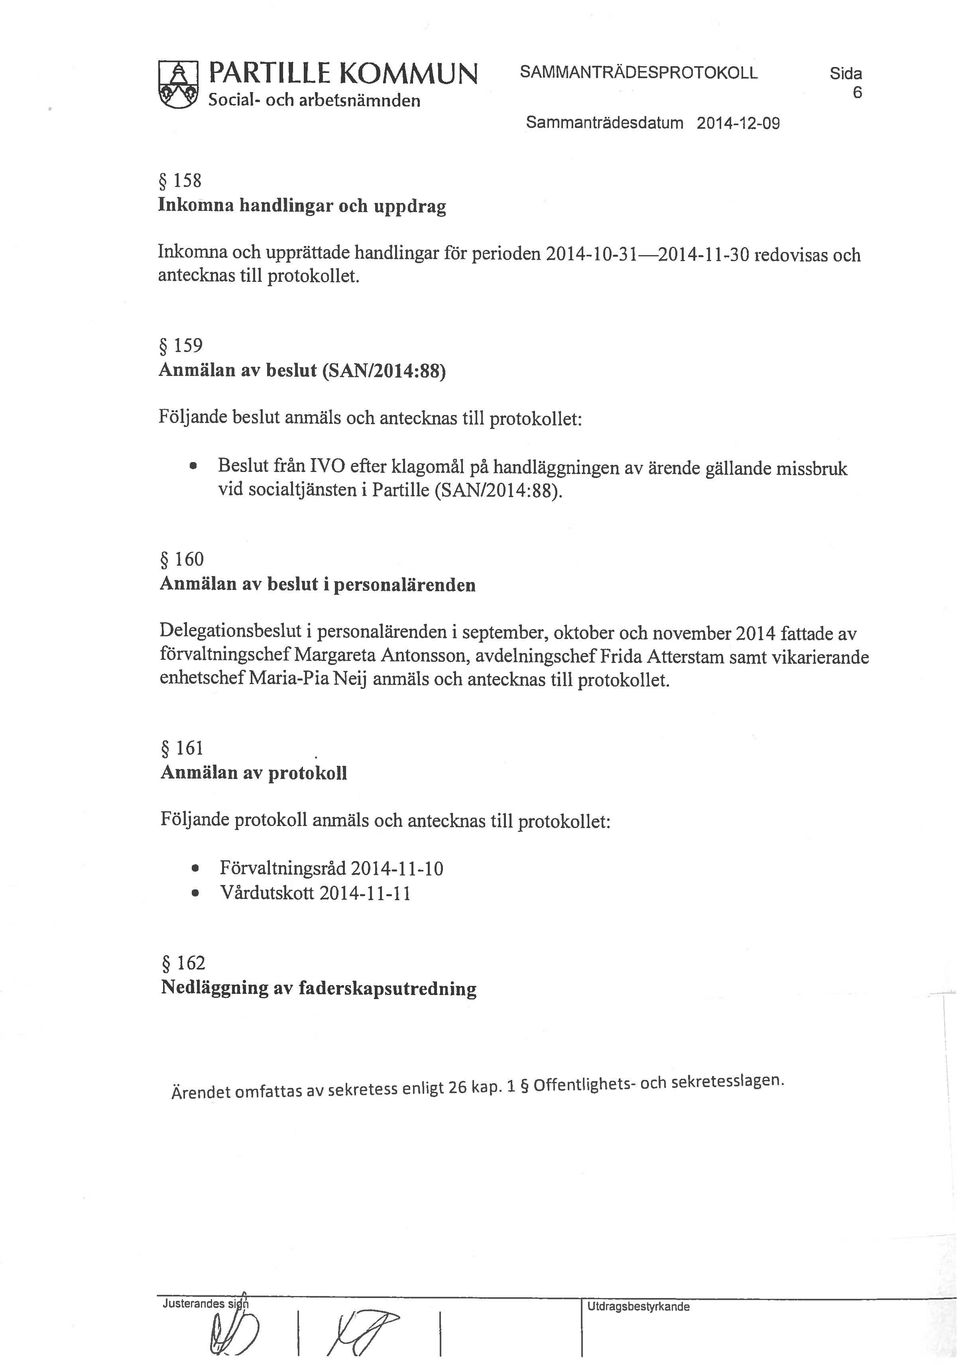 Nedläggning av faderskapsutredning Vårdutskott 2014-11-11 Förvaltningsråd 2014-11-10 Följande protokoll anmäls och antecknas till protokollet: Anmälan av protokoll 161 förvaltningschef Margareta